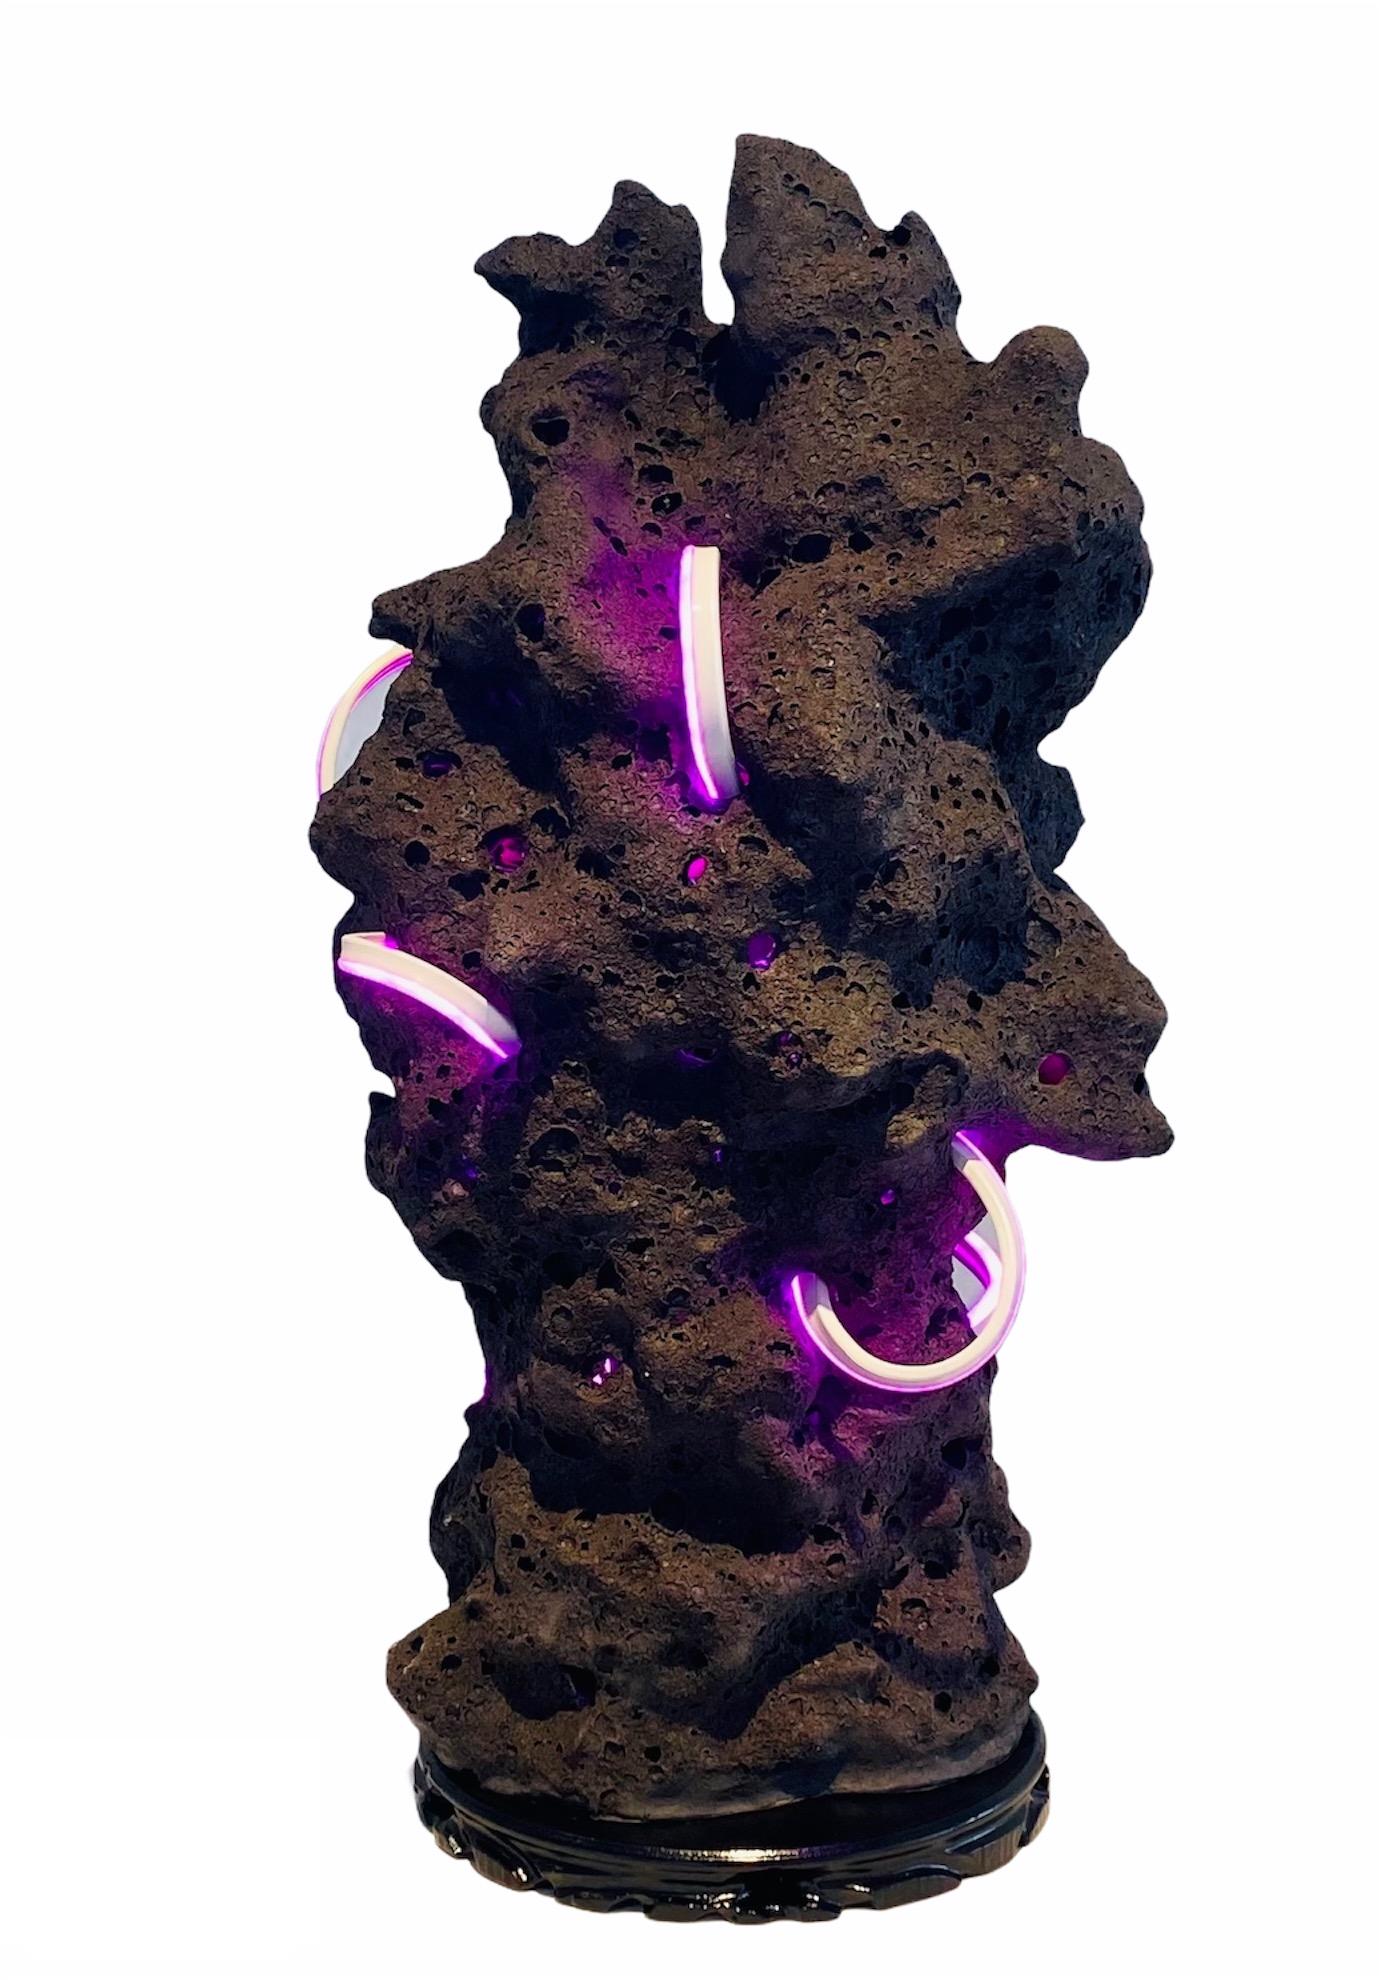 Abstract Sculpture Kristina Larson - Scholar's Stone I (noir avec lumière rose) contemporain